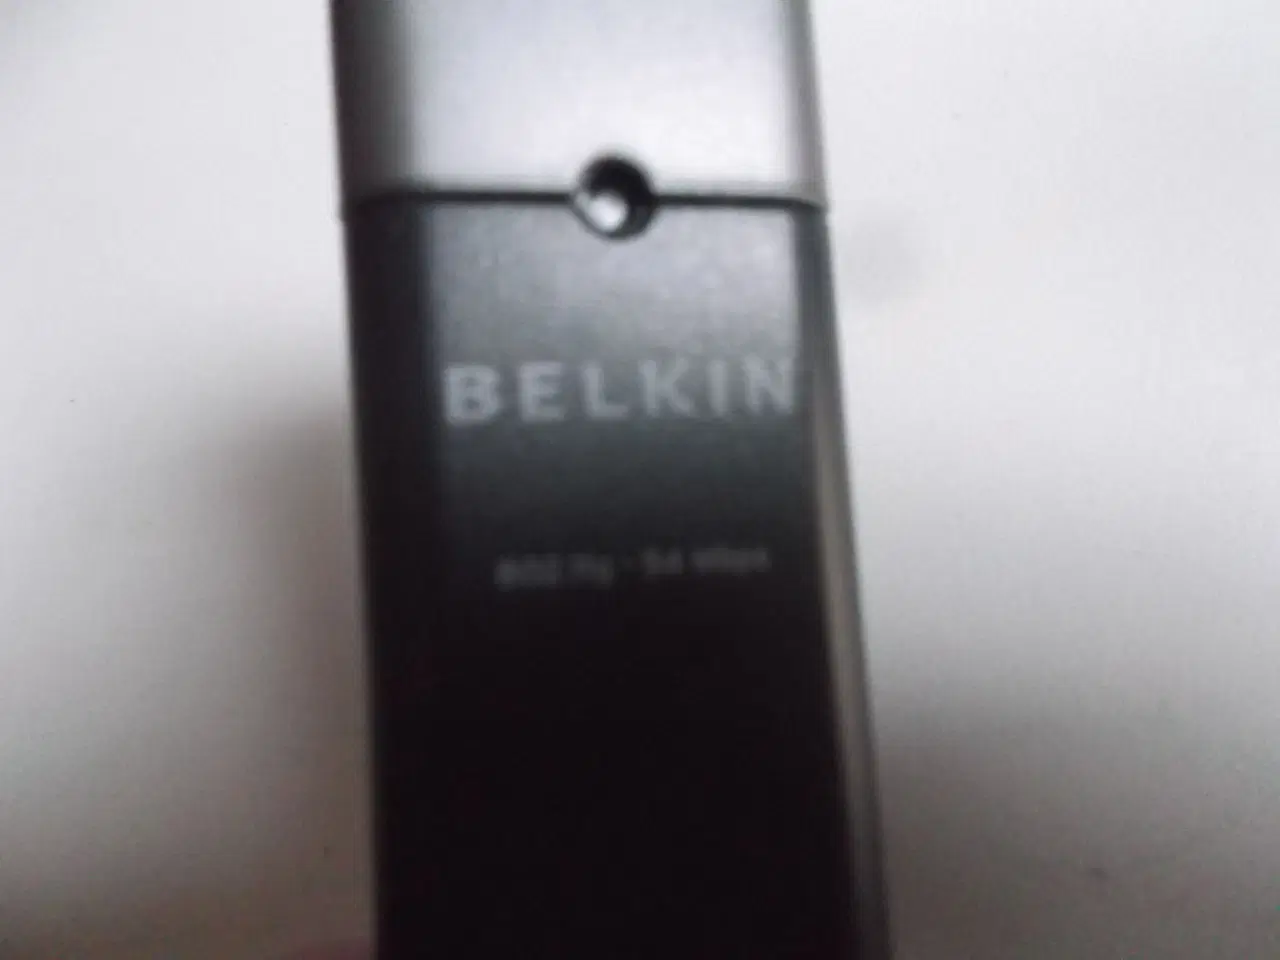 Billede 2 - Belkin F5D7050 USB trådløs WiFi netværksadapter